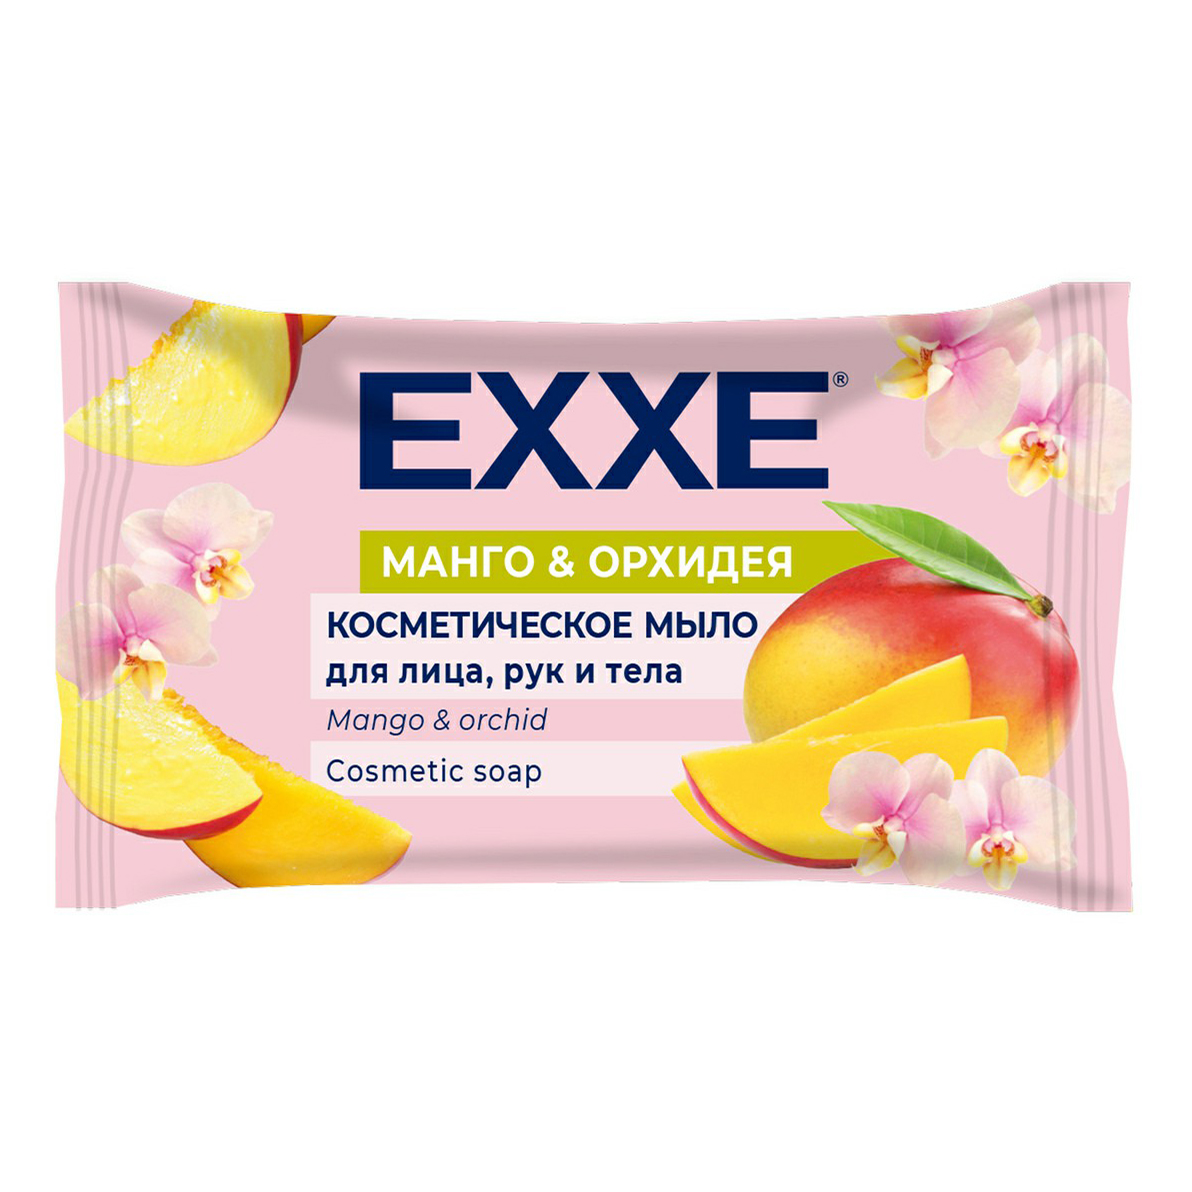 Туалетное мыло Exxe косметическое Манго и орхидея 75 г мыло exxe манго и орхидея 75 г косметическое